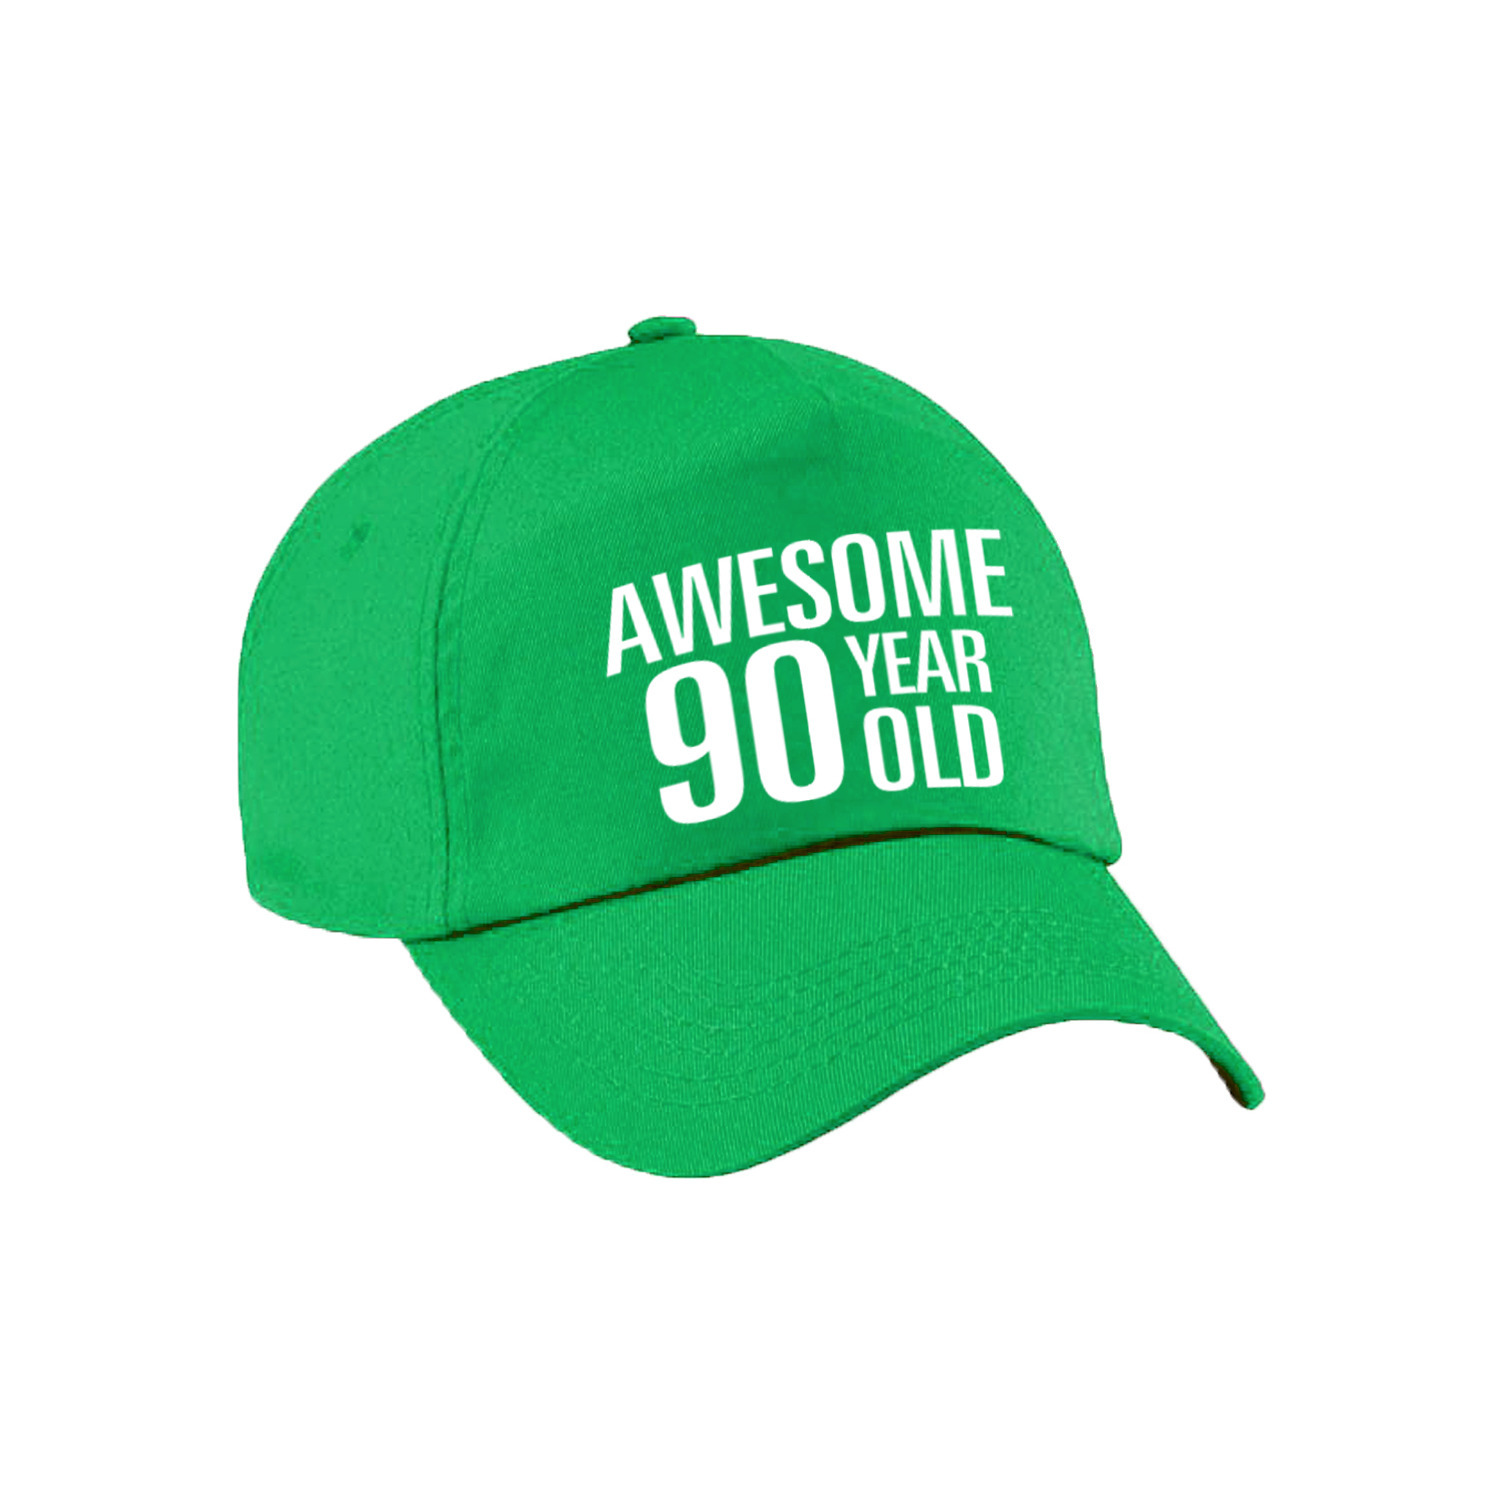 Awesome 90 year old verjaardag pet / cap groen voor dames en heren